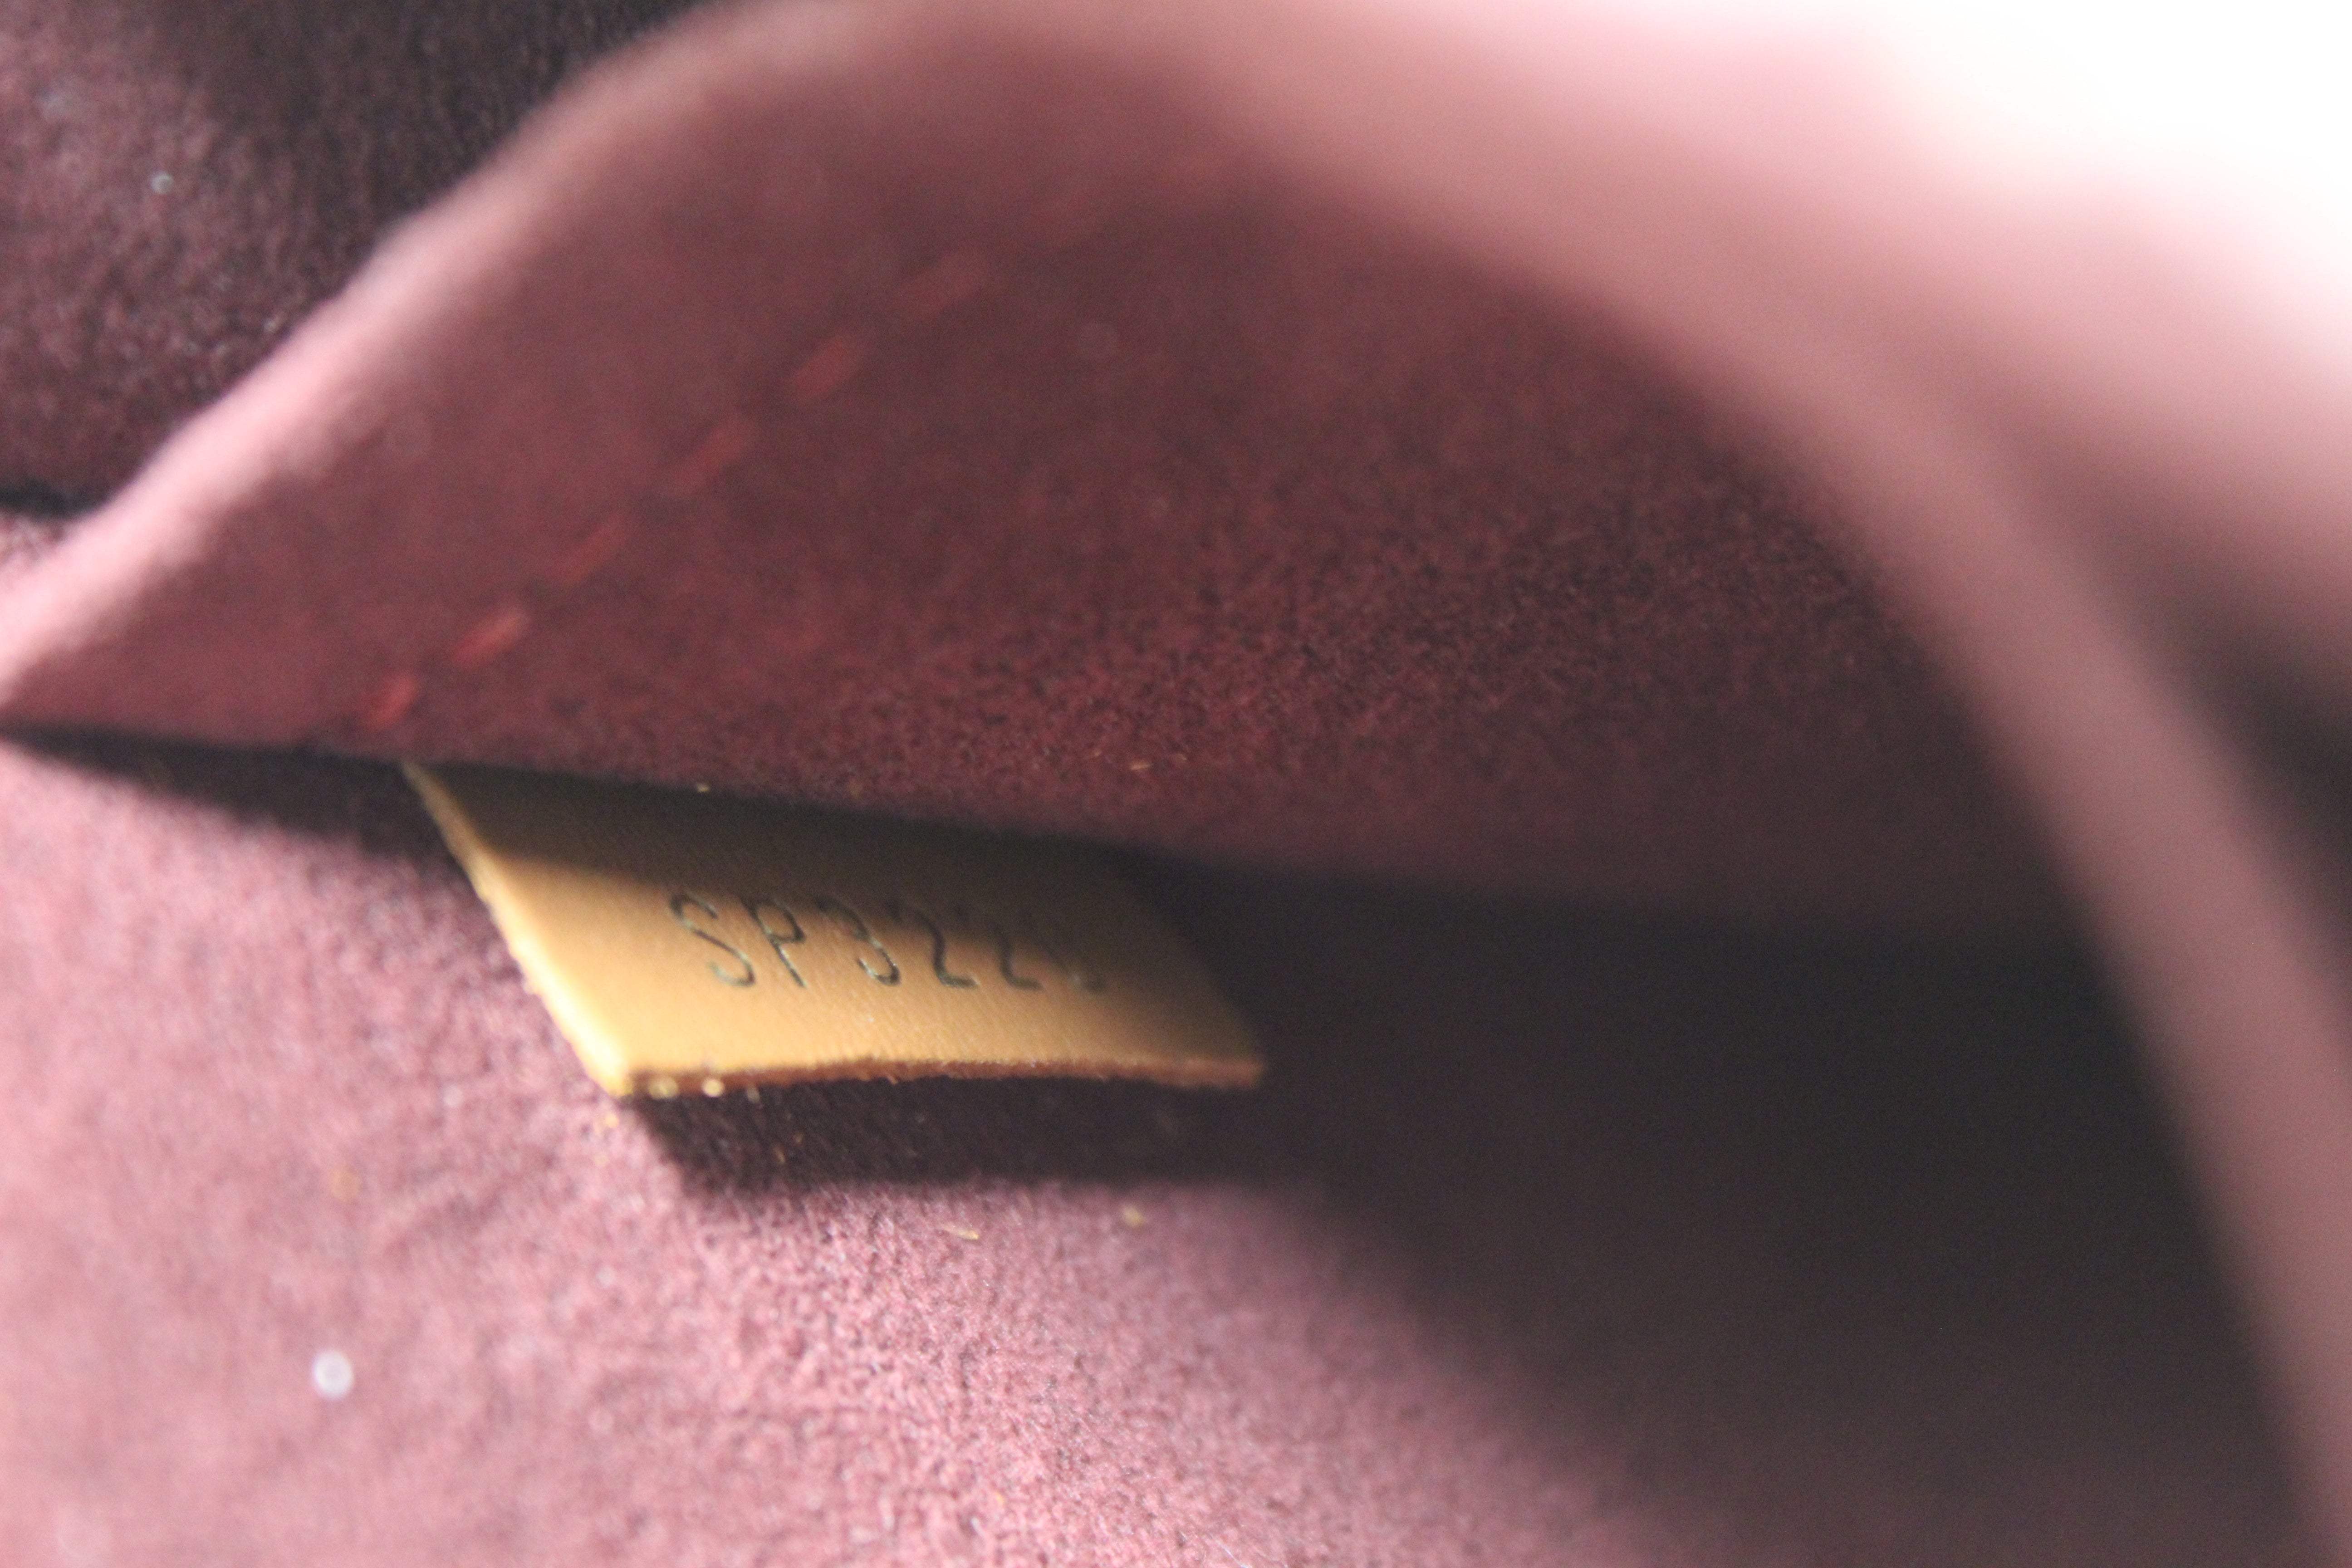 Authentic Louis Vuitton Red Jacquard Since 1854 Petit Sac Plat Bag